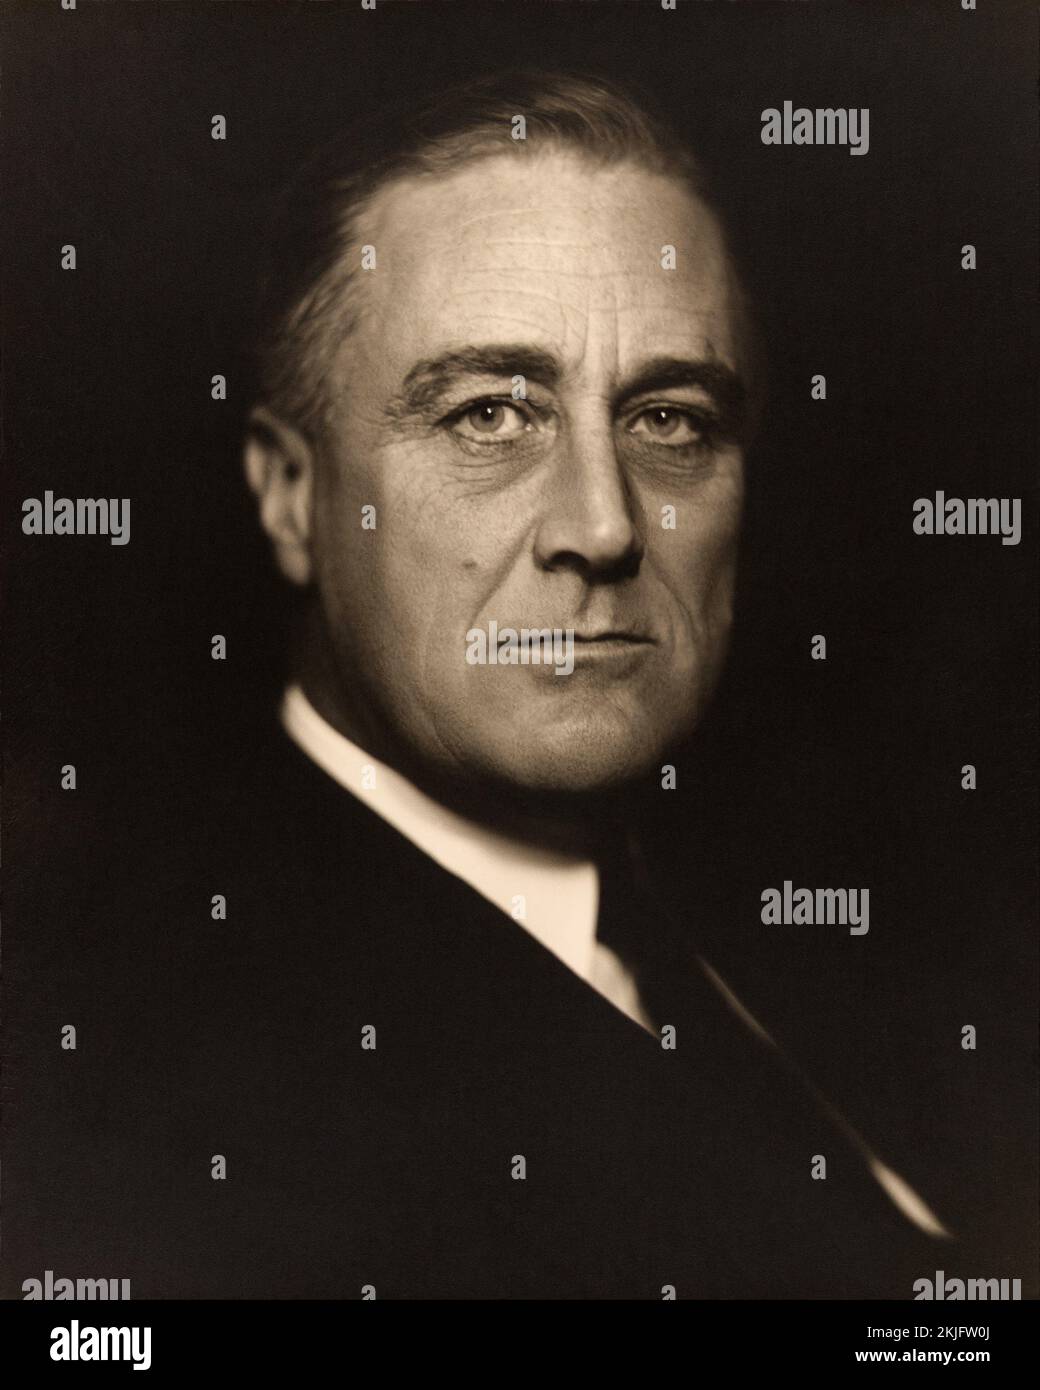 Ein Porträt von US-Präsident Franklin D. Roosevelt. Stockfoto